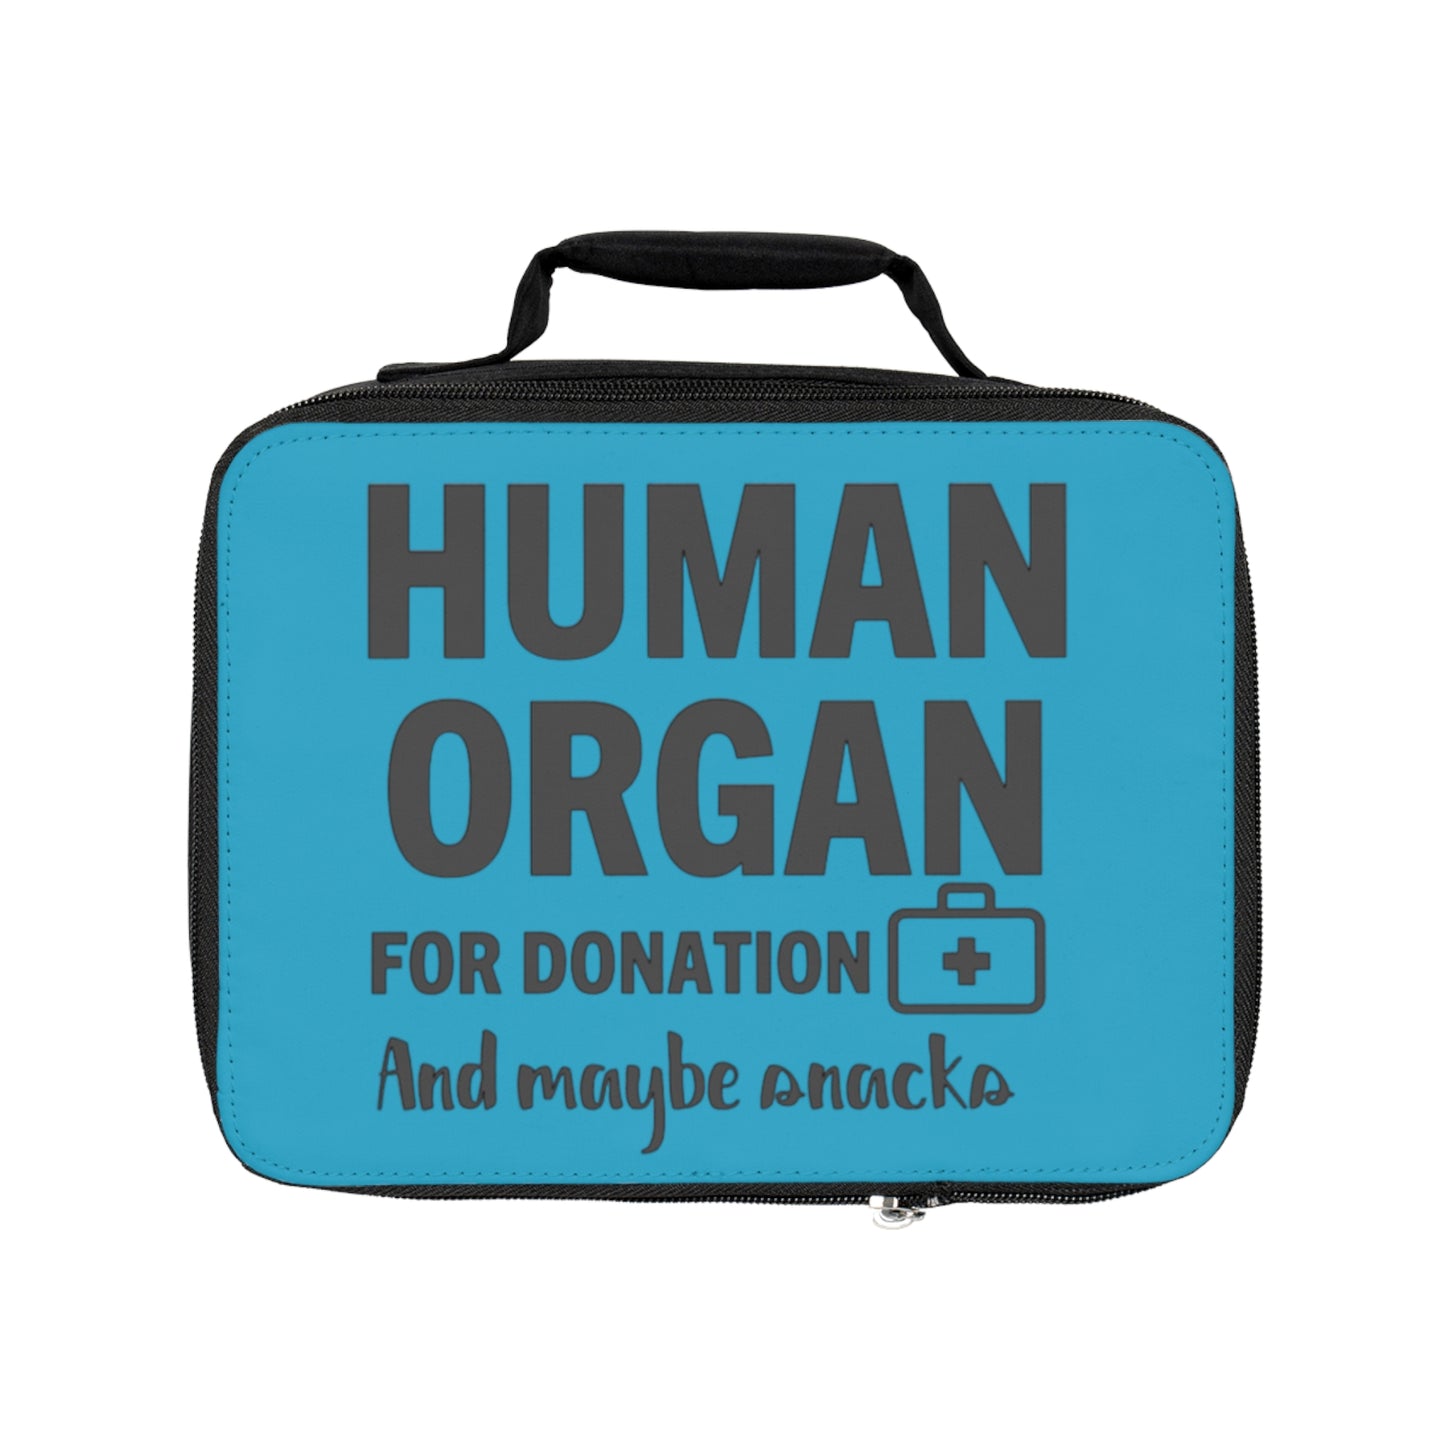 Órgano humano para donación y snacks - Turquesa - Bolsa de almuerzo